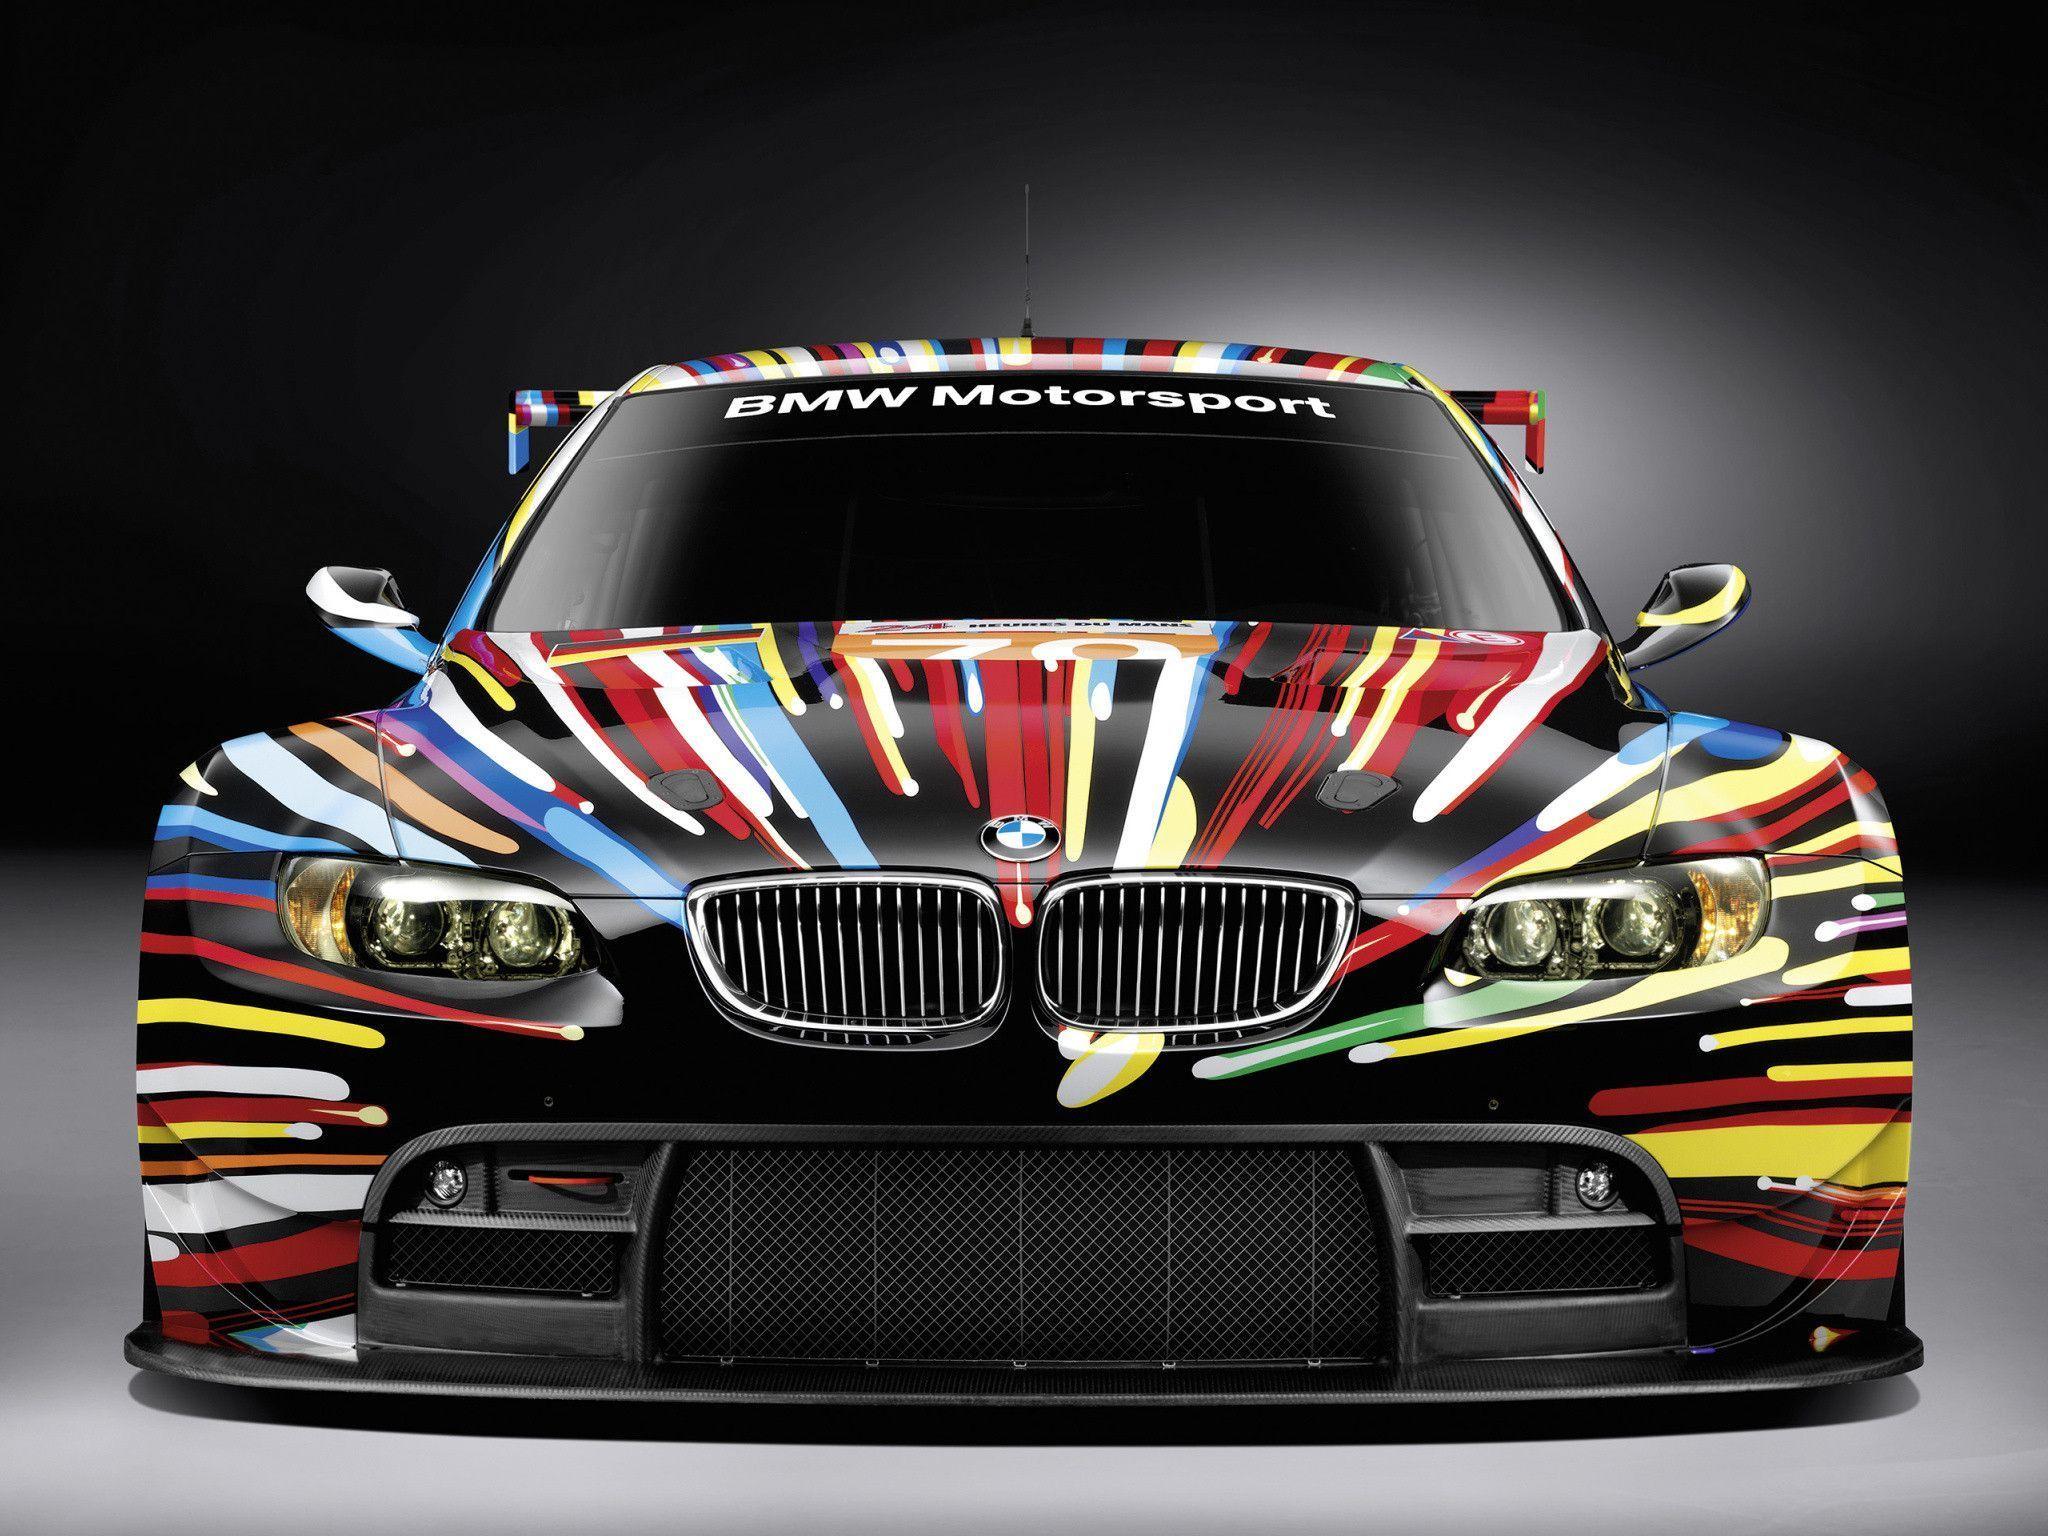 BMW M3 GT2 Jeff Koons Art Car E92 WallpaperBmw m3 wallpaper. Bmw